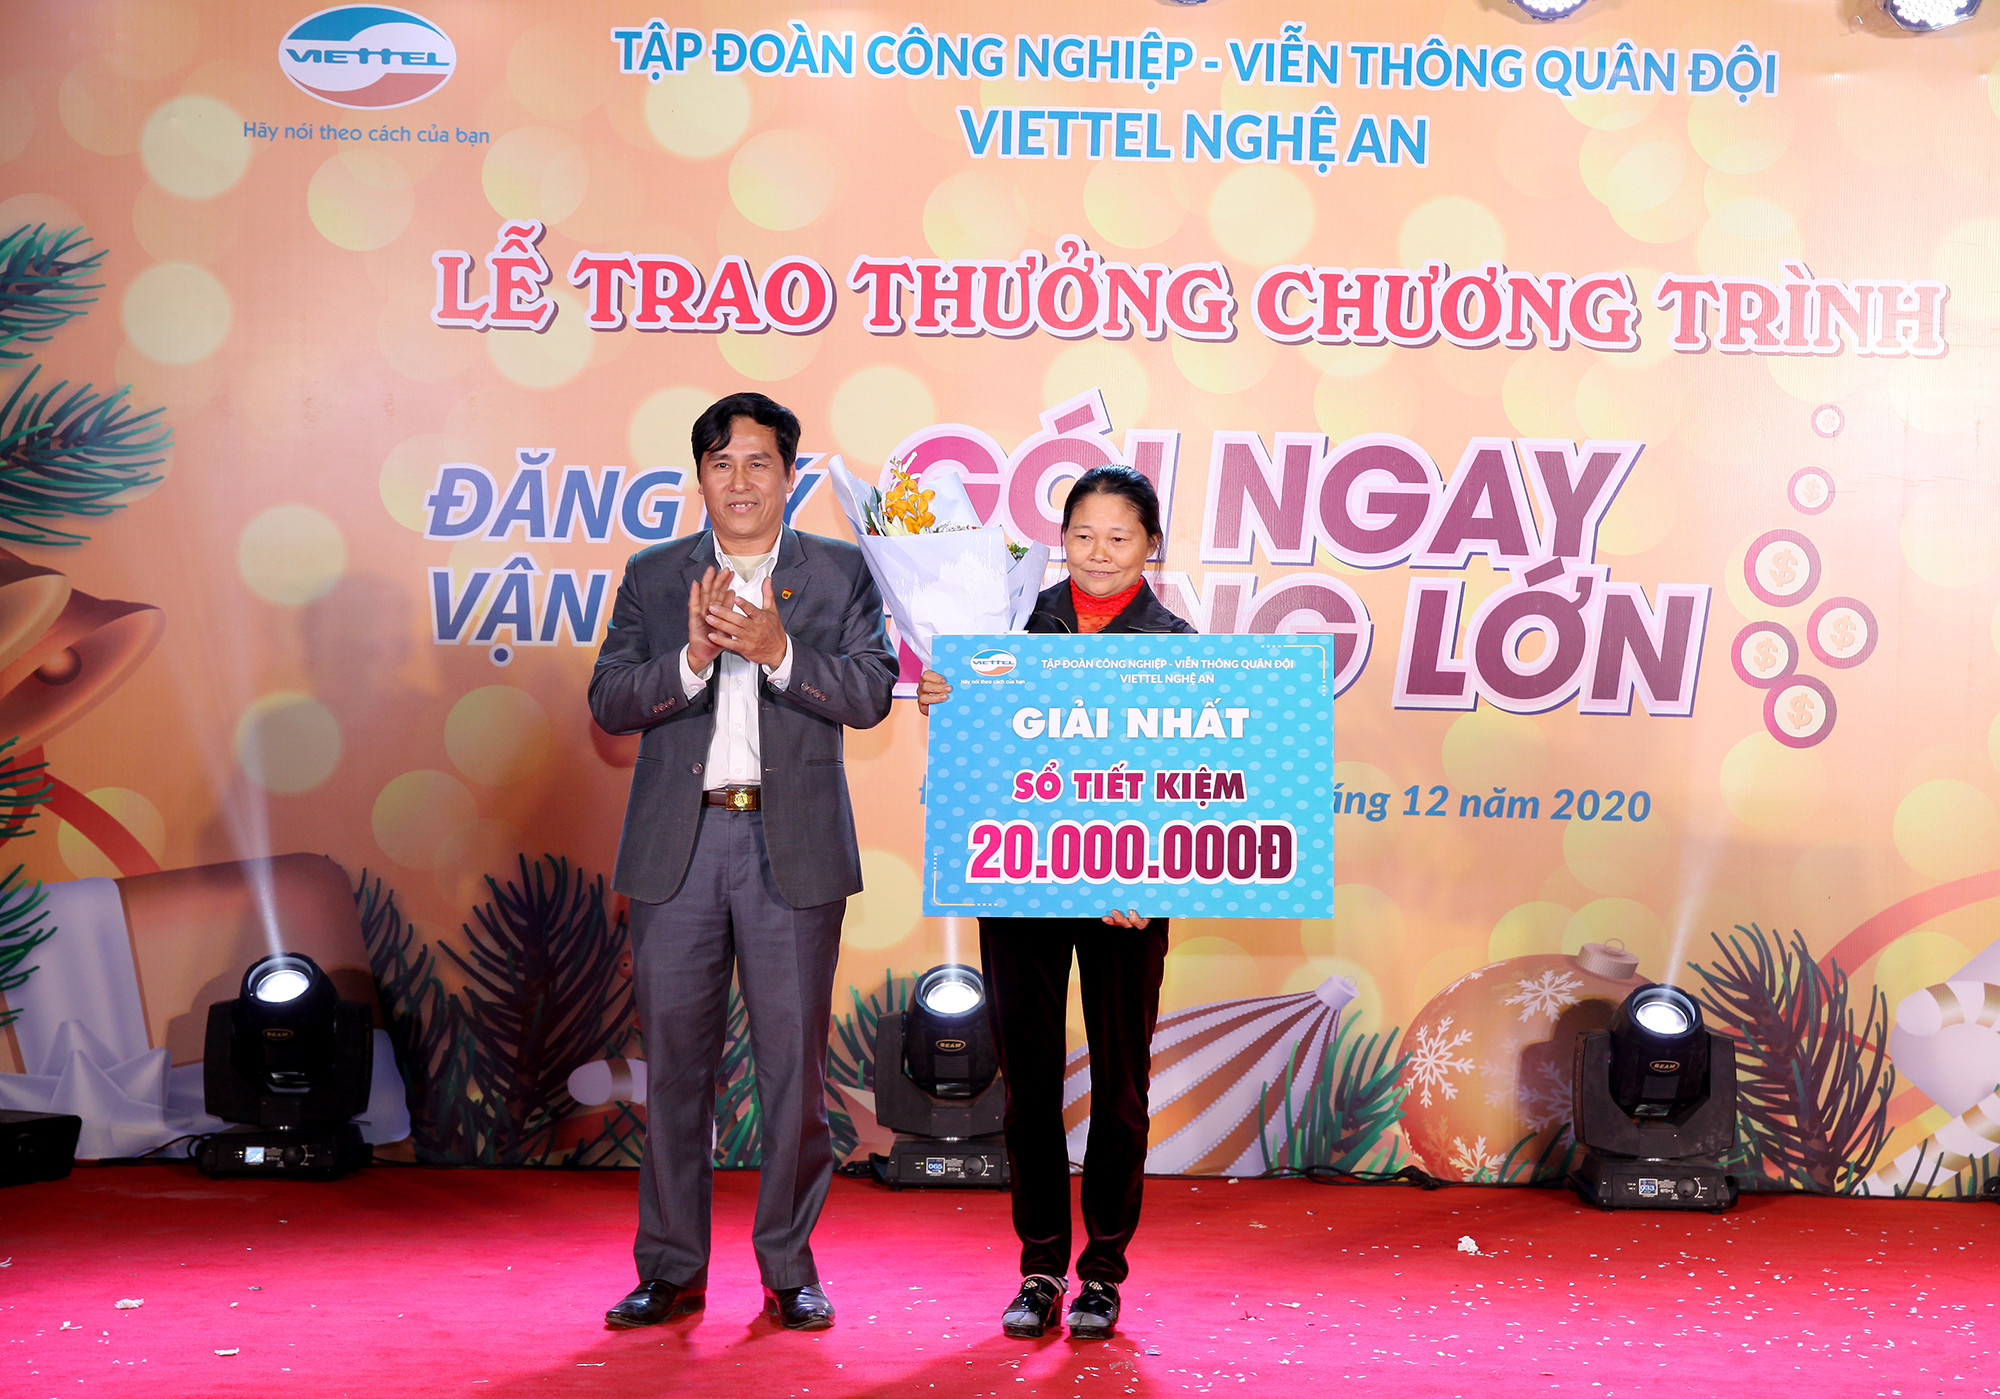 Ông Nguyễn Kim Nam- Trưởng phòng Văn hóa- Thông tin huyện Đô Lương trao giải nhất cho khách hàng trúng thưởng